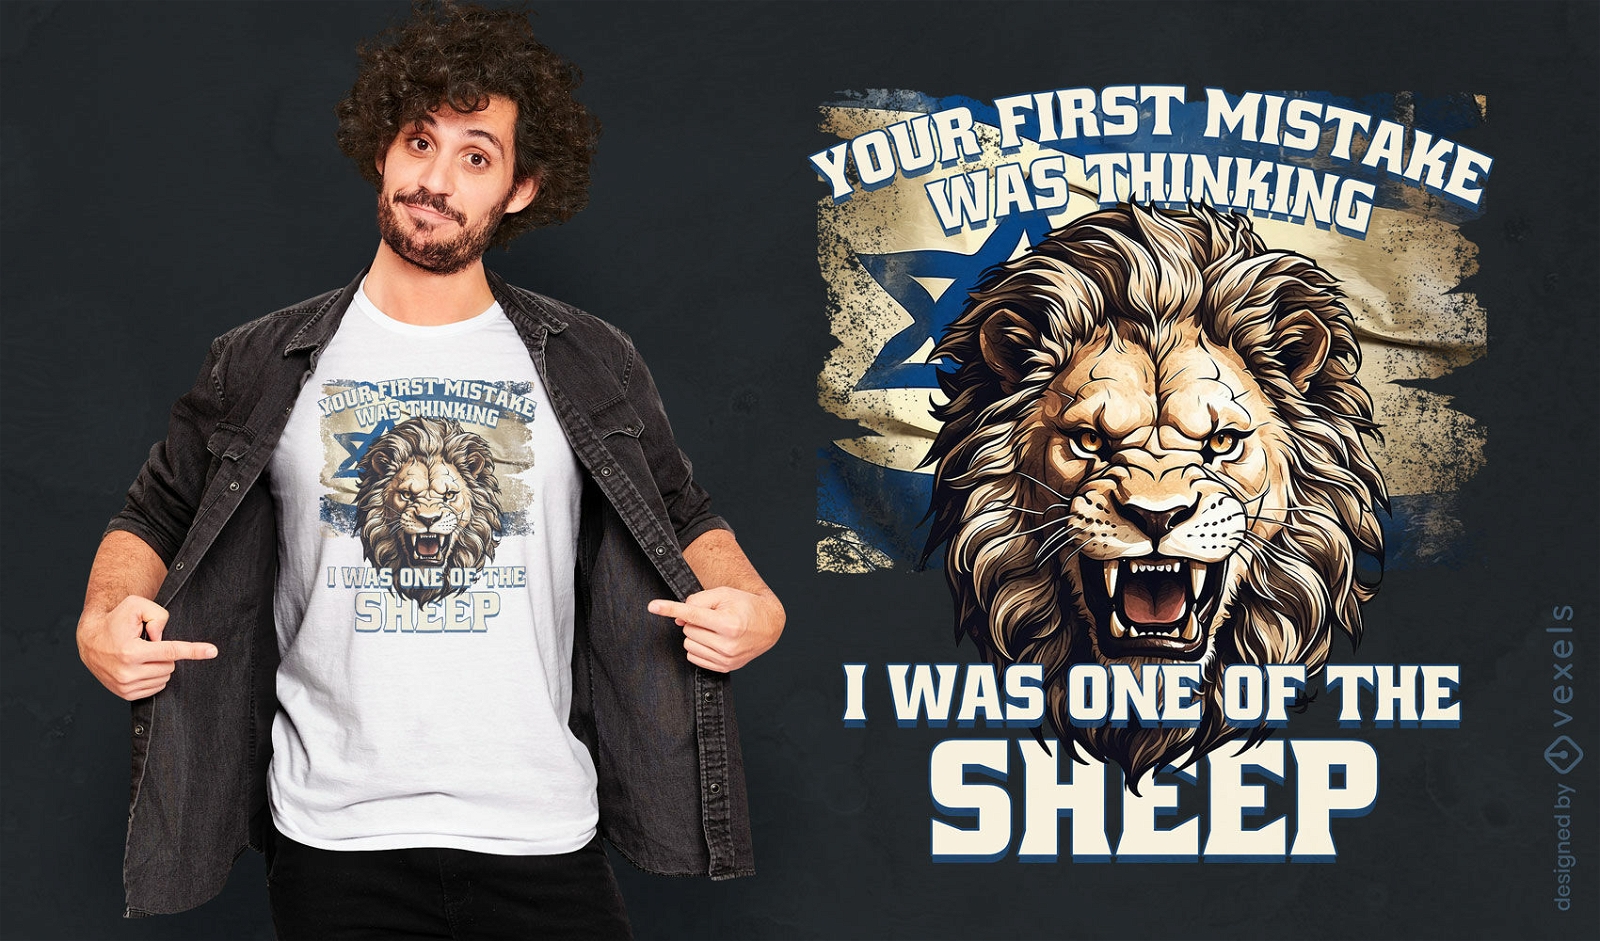 Fierce lion quote t-shirt design